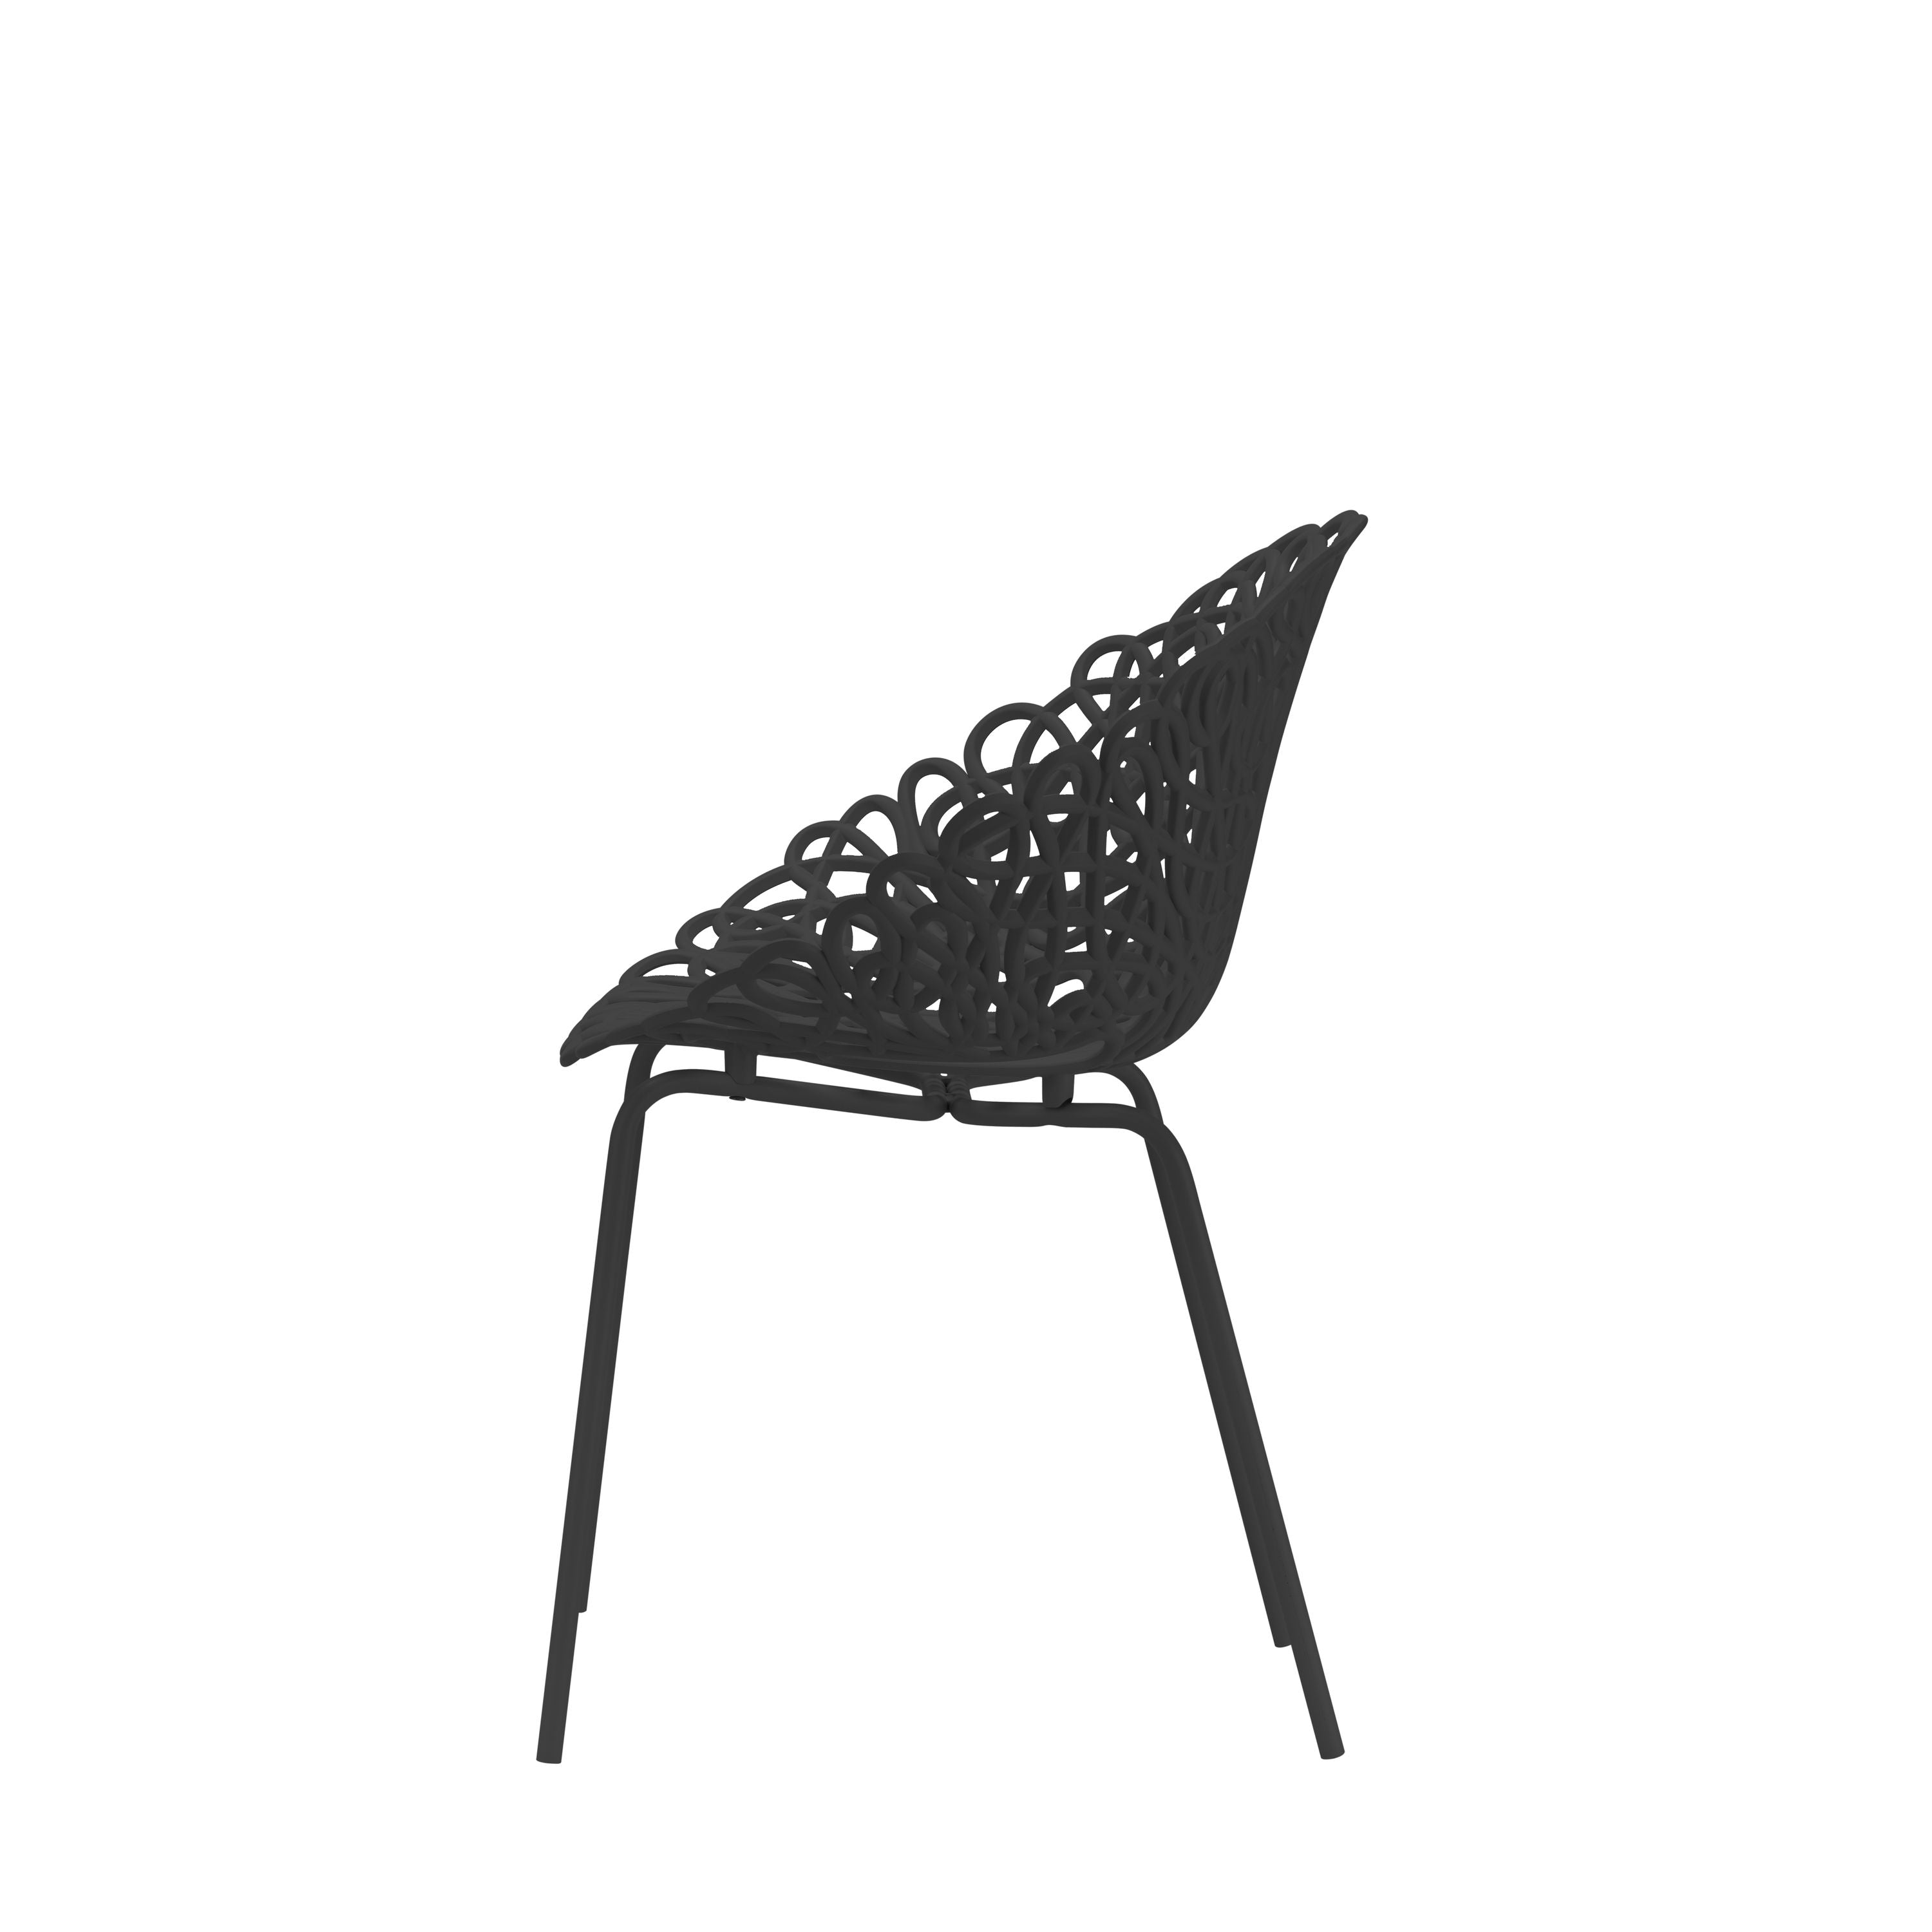 Qeeboo Bacana -stoel buitenset van 2 pc's, zwart